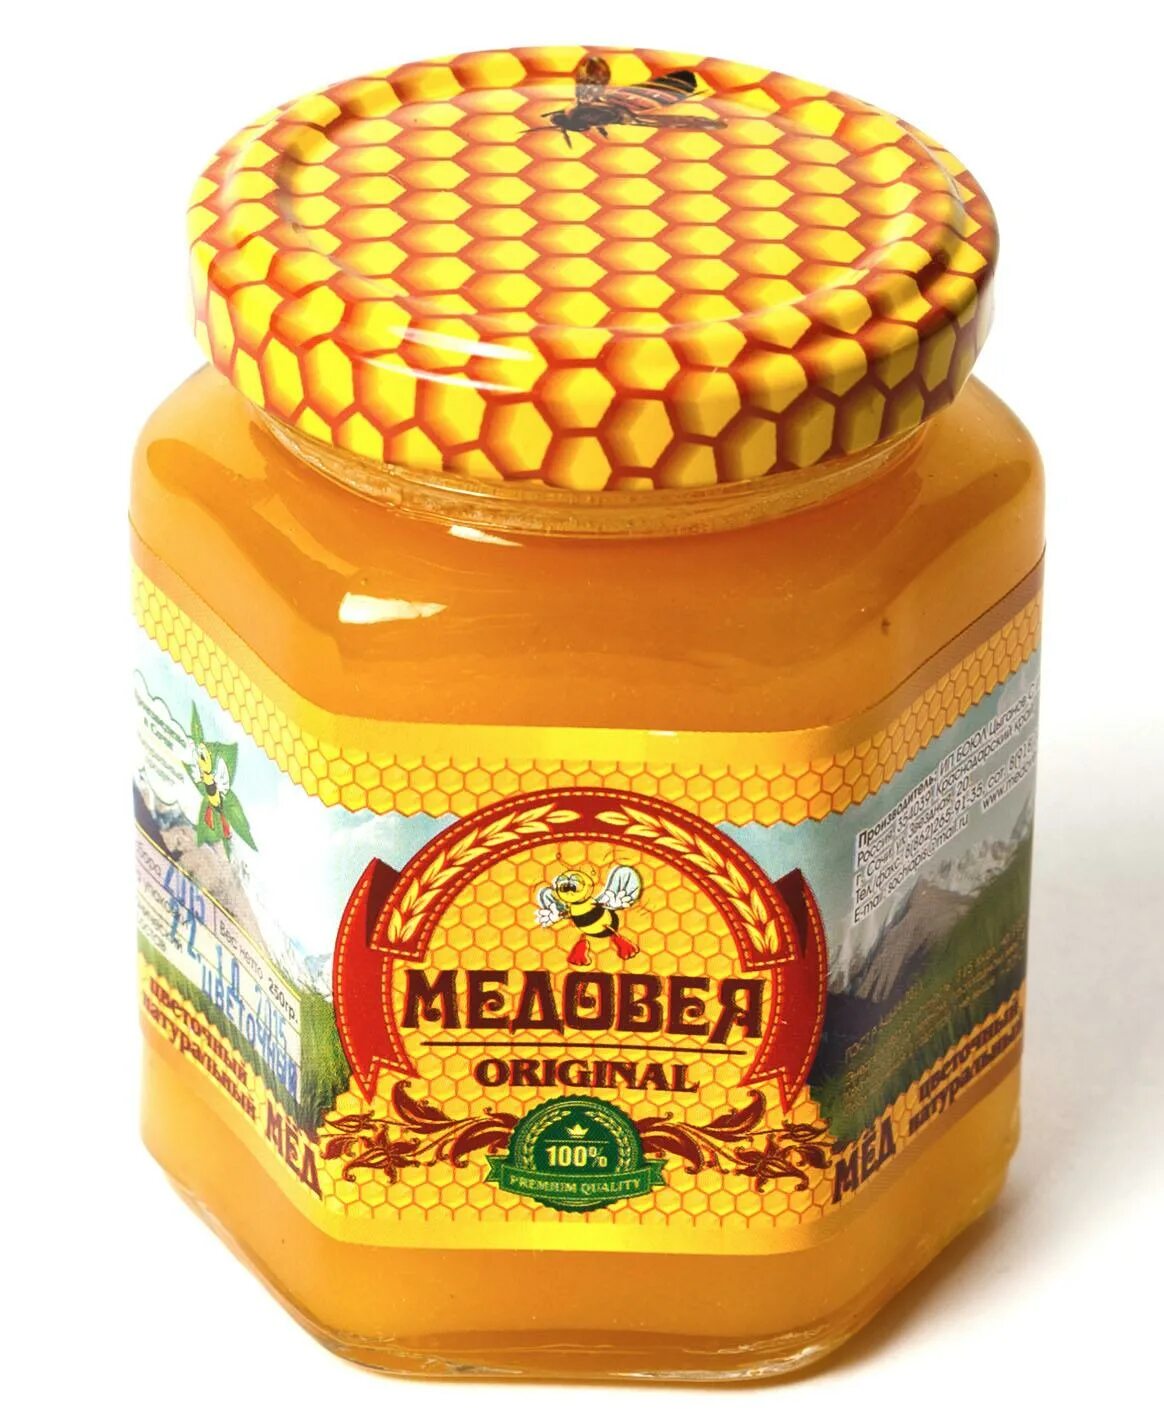 Купить мед интернет магазин. Липовый мед. Пчелиная продукция. Продукты пчеловодства. Медовая продукция.